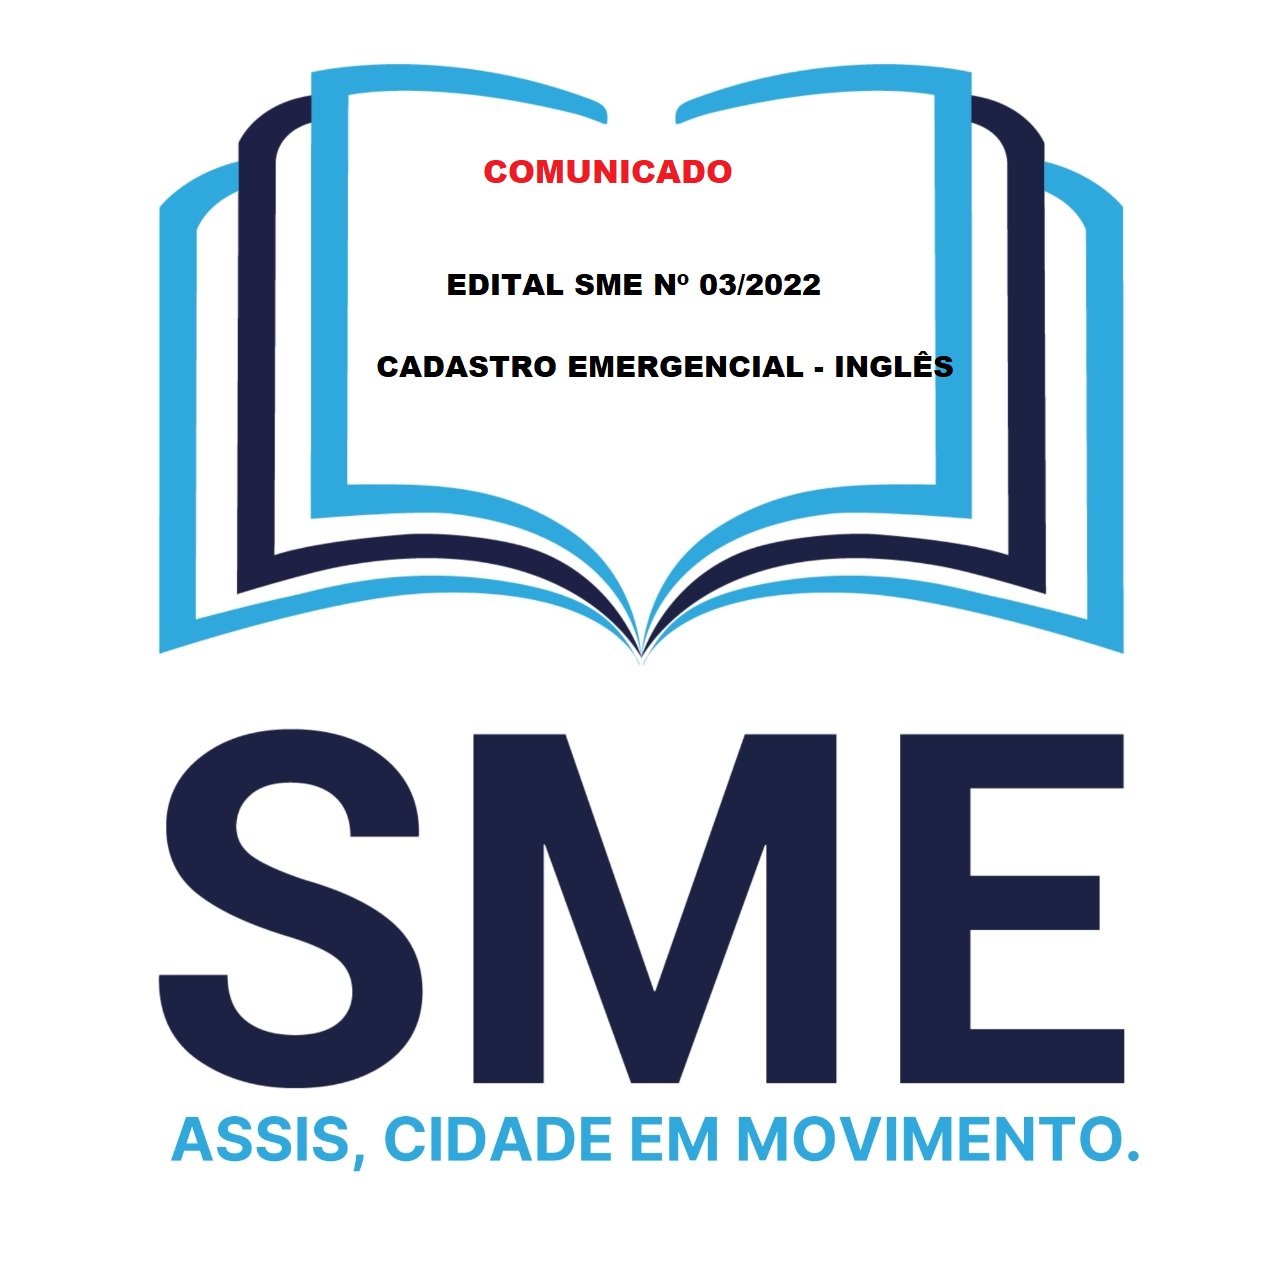 EDITAL SME Nº 03/2022 - CADASTRO EMERGENCIAL - INGLÊS